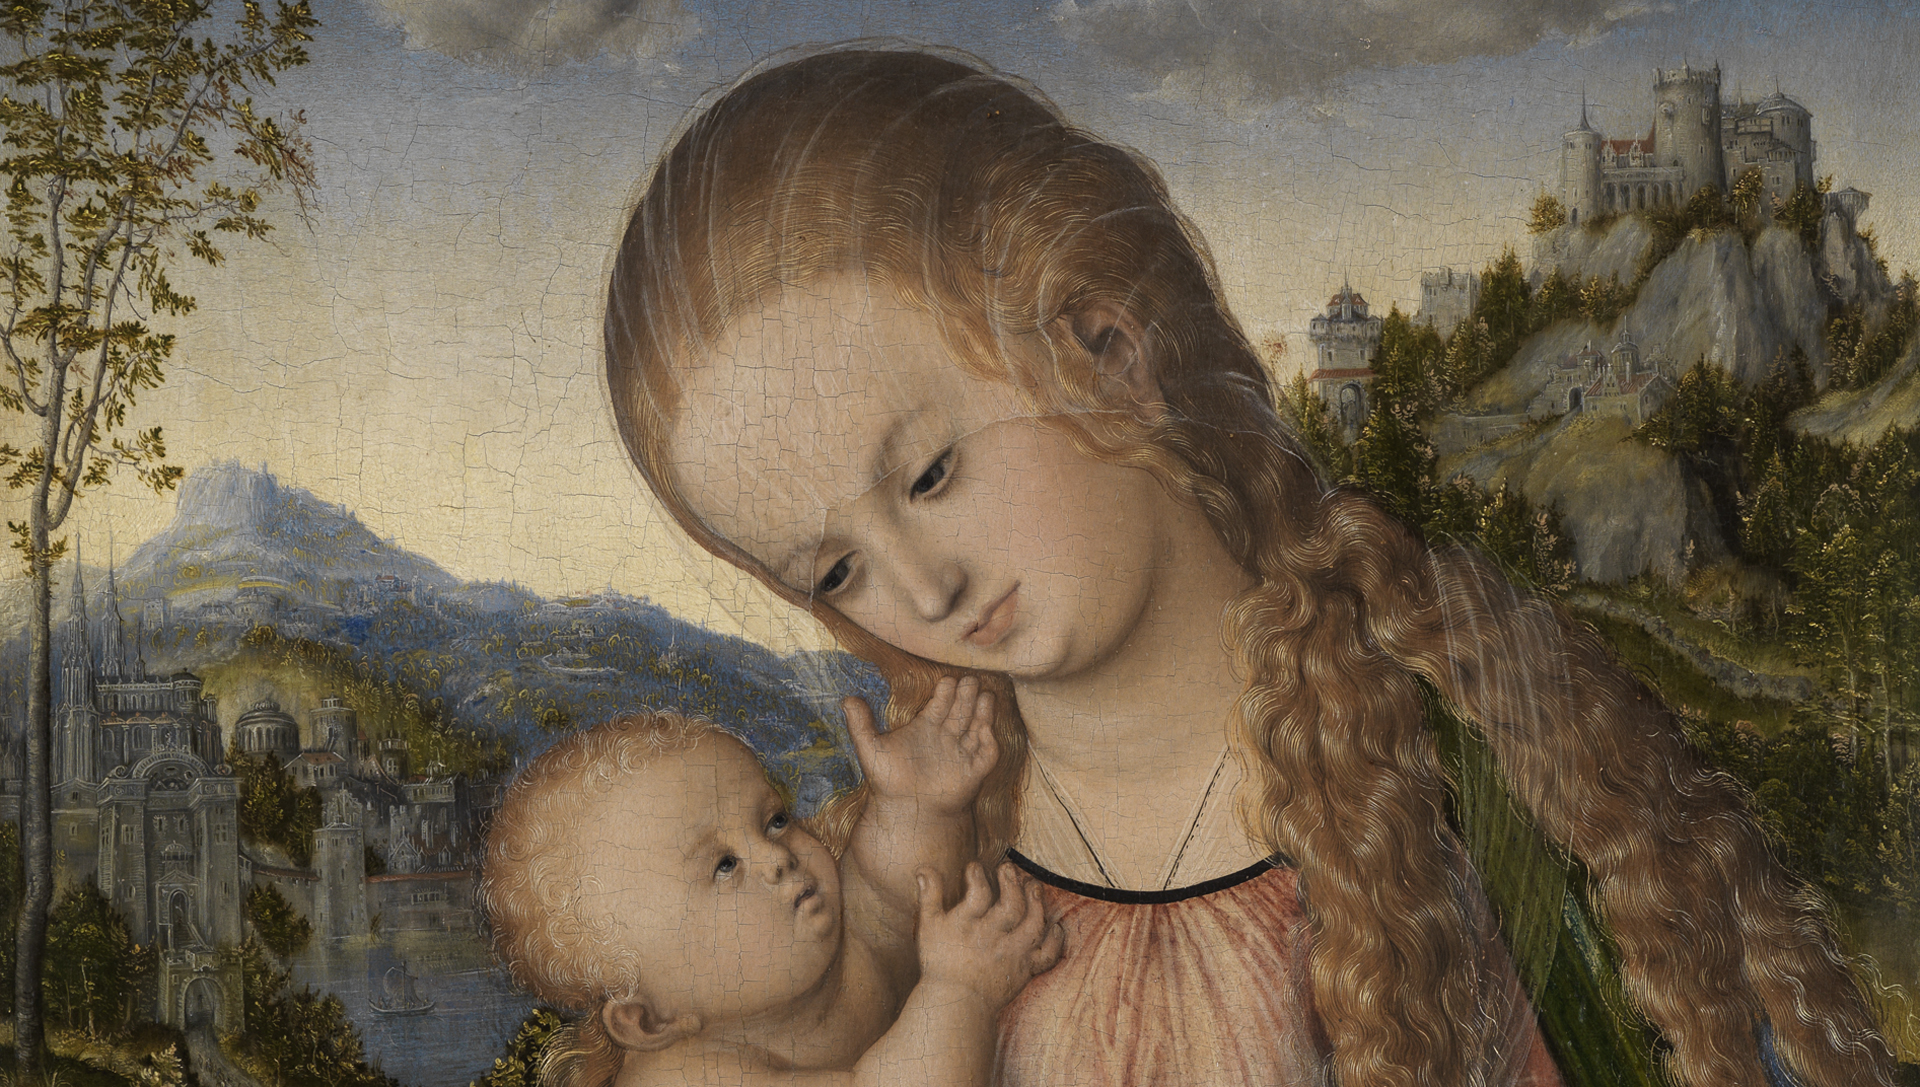 Detail aus Lucas Cranachs Gemälde: Maria mit Kind vor Berglandschaft mit Gewässer, Burgen und Stadt.